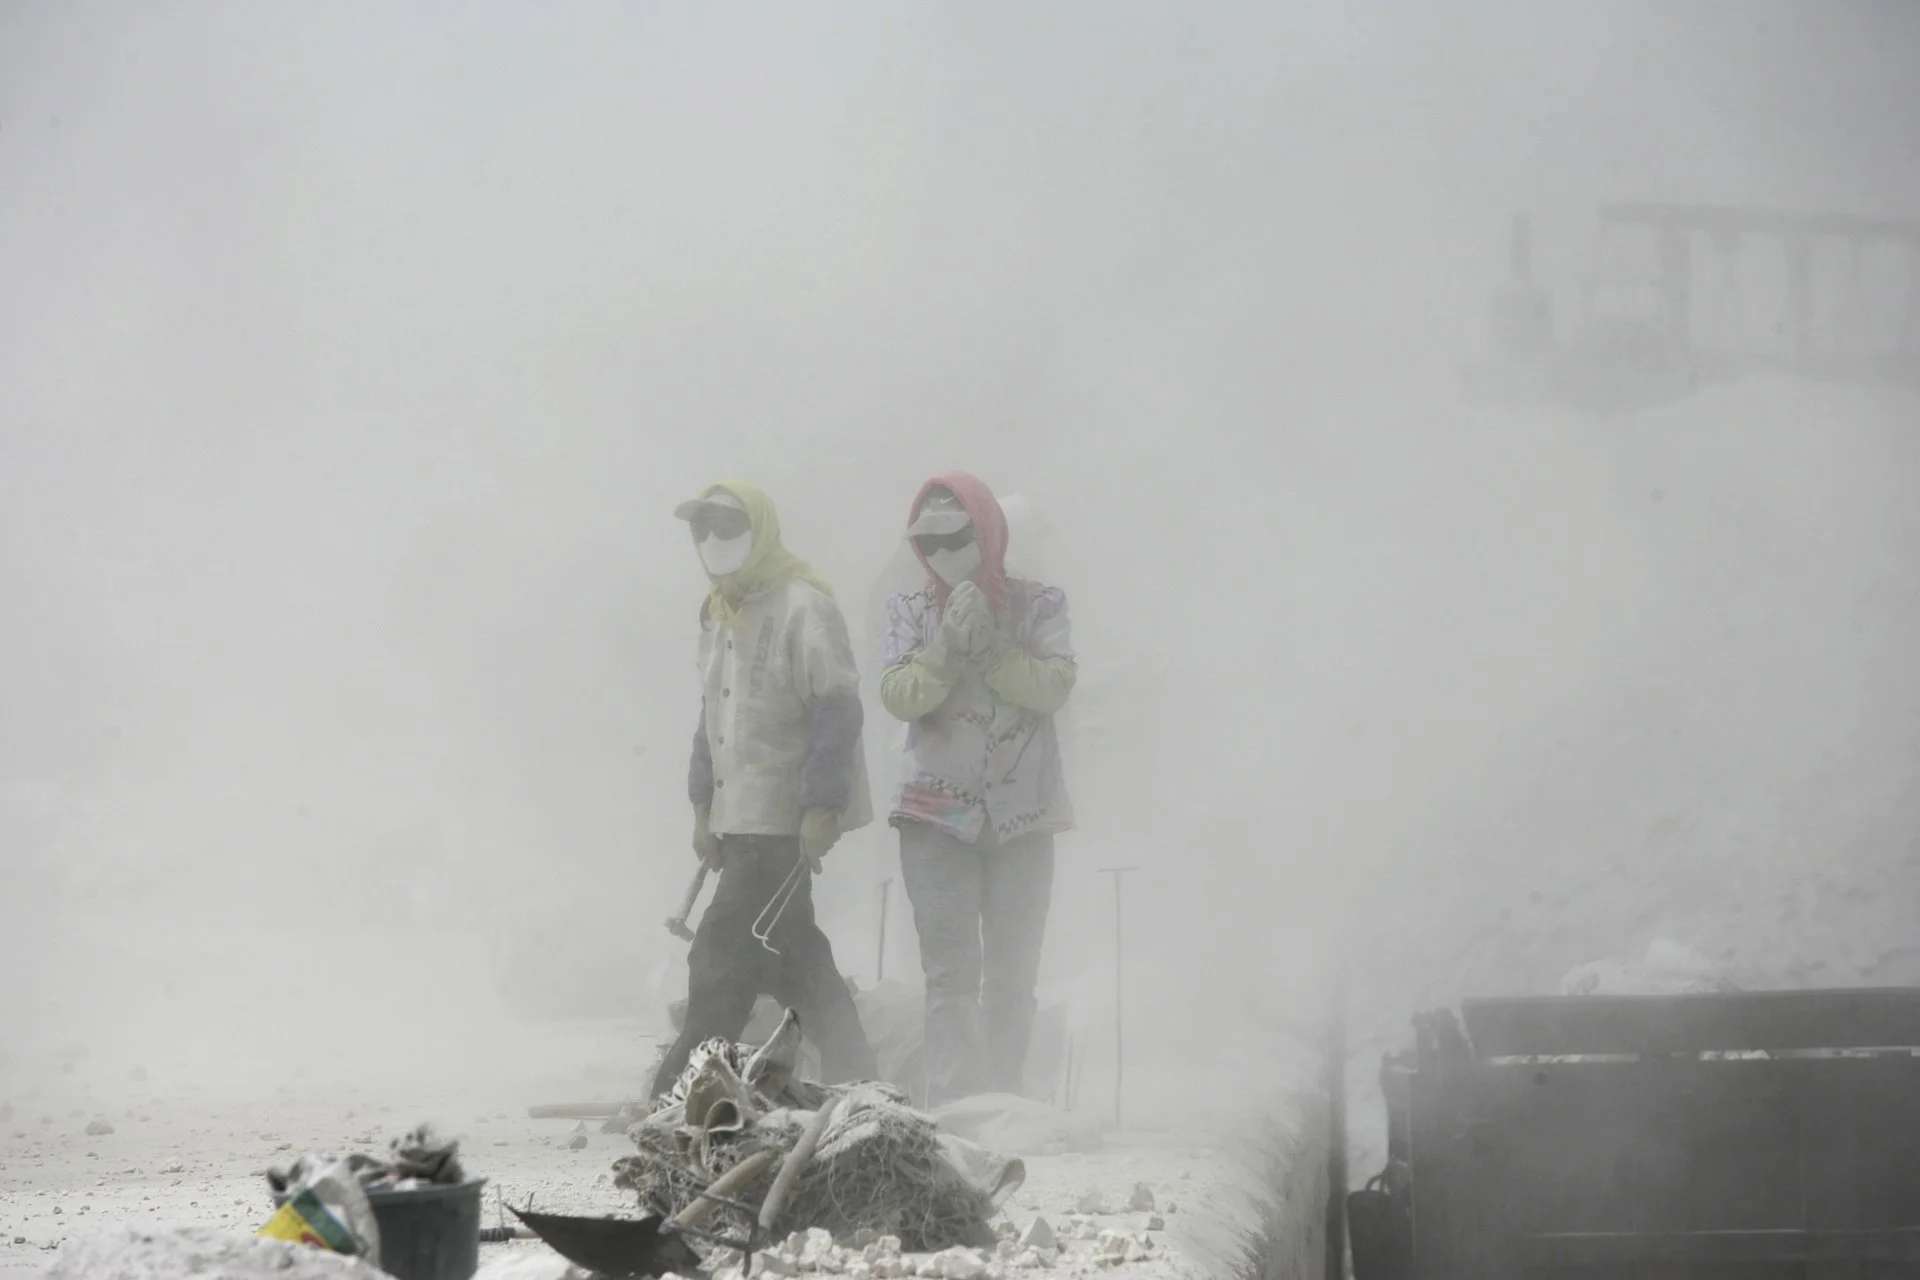 Trabajadores chinos trabajan bajo el polvo y la contaminación